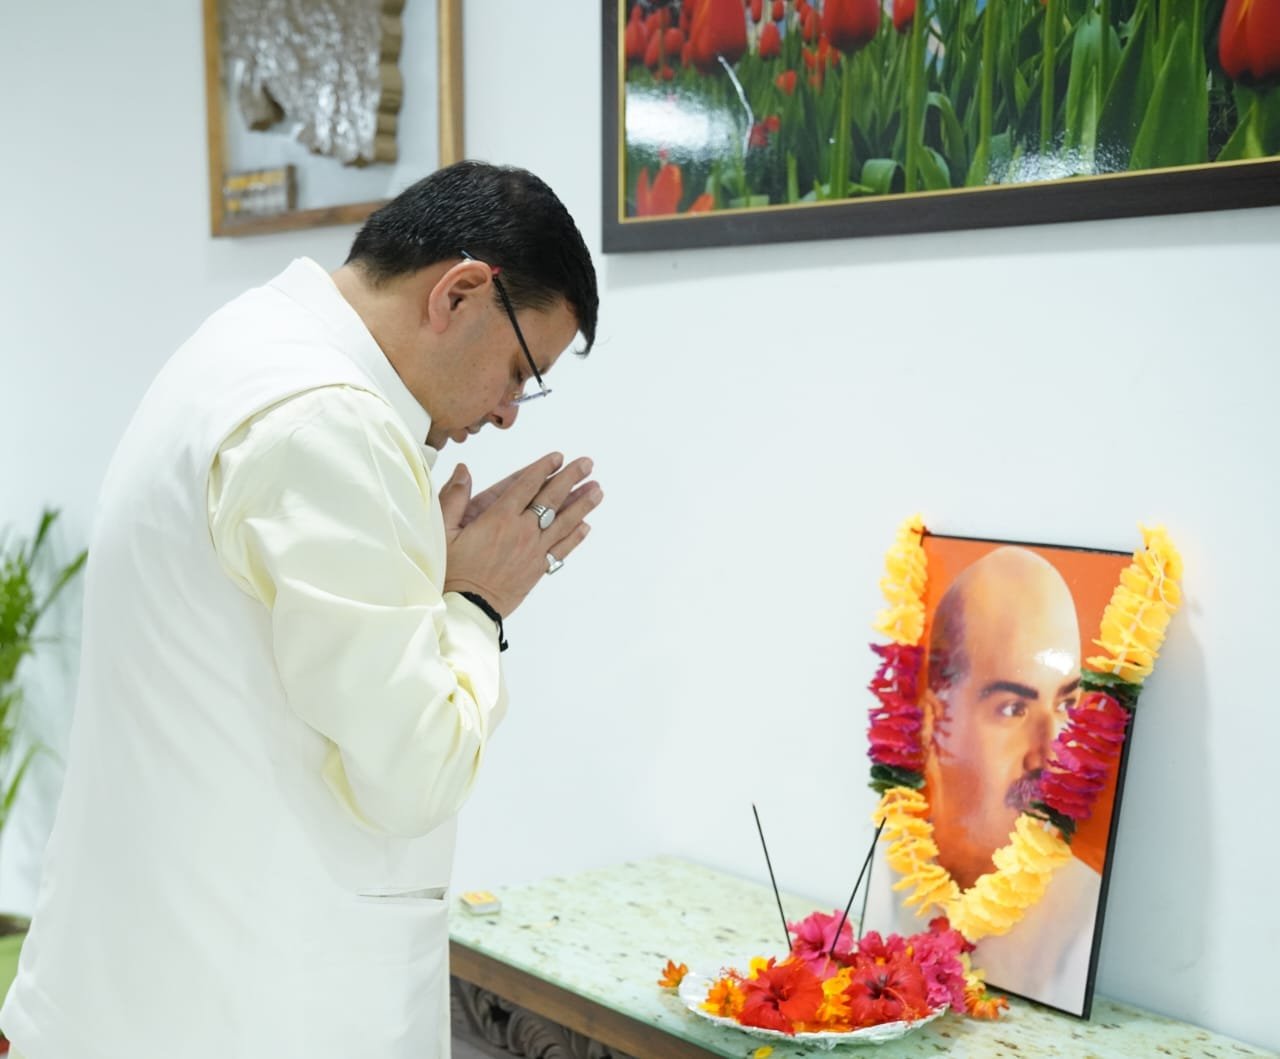 CM पुष्कर सिंह धामी ने डॉ. श्यामा प्रसाद मुखर्जी की जयंती पर की श्रद्धांजलि अर्पित